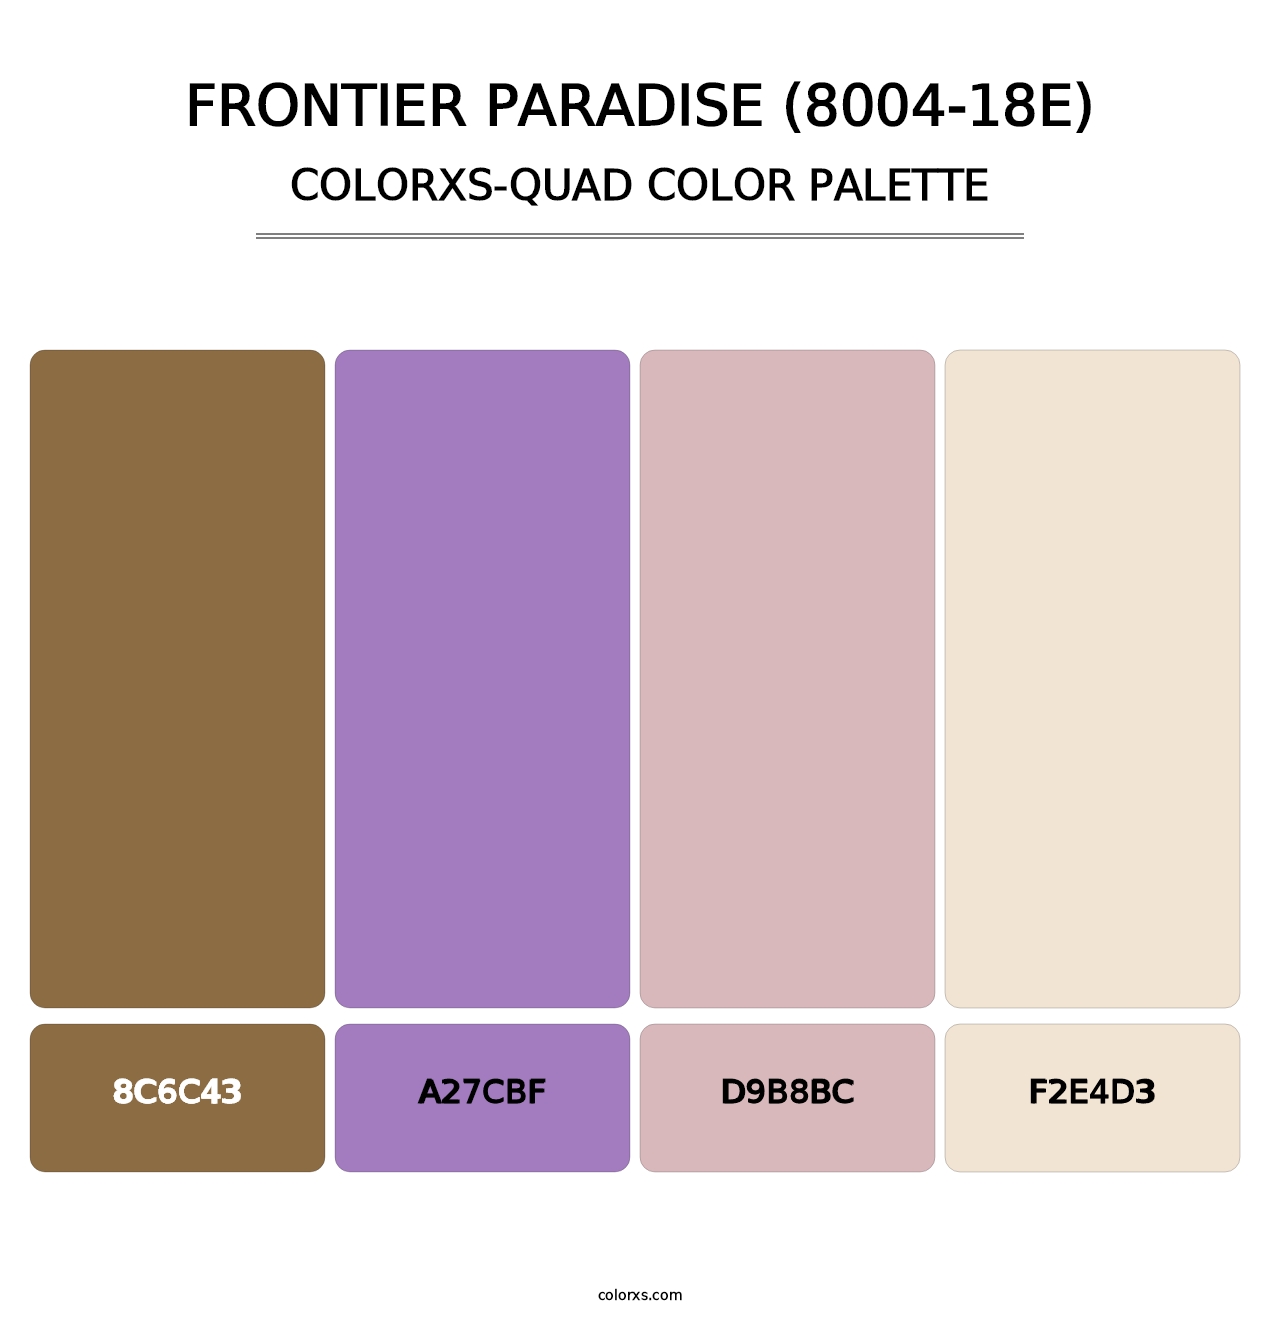 Frontier Paradise (8004-18E) - Colorxs Quad Palette